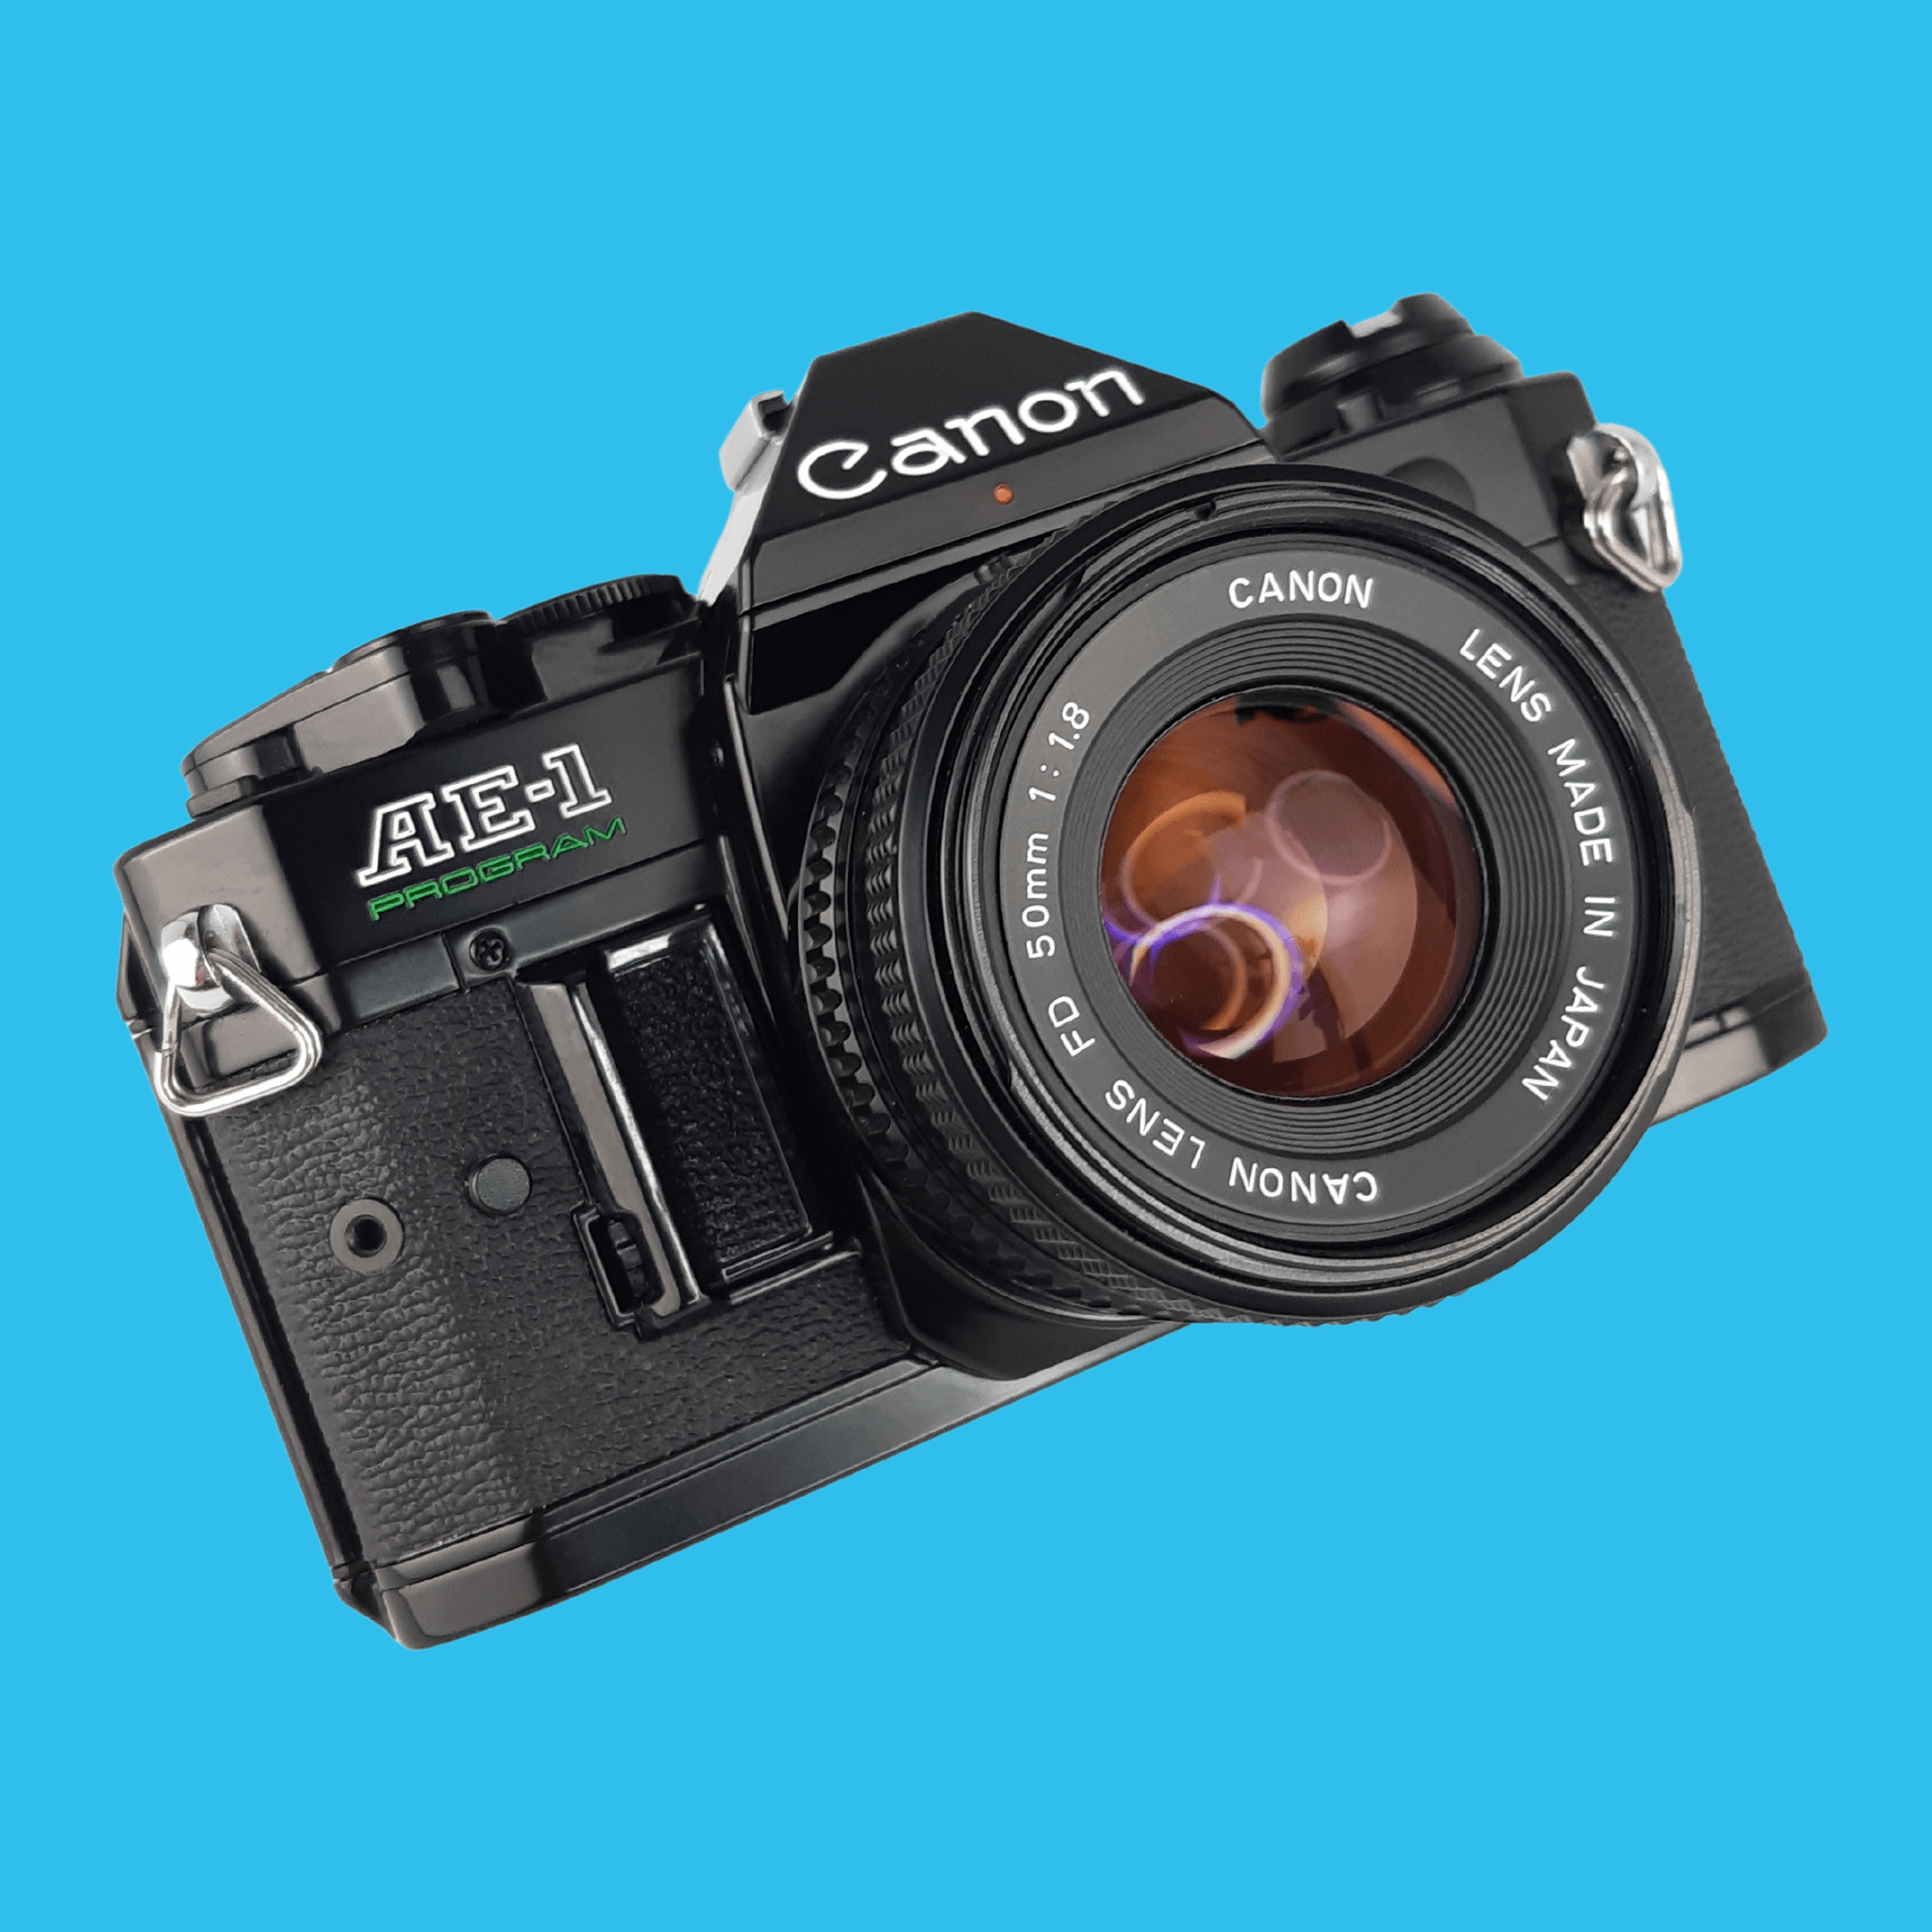 Canon AE-1 PROGRAM レンズ付き - フィルムカメラ